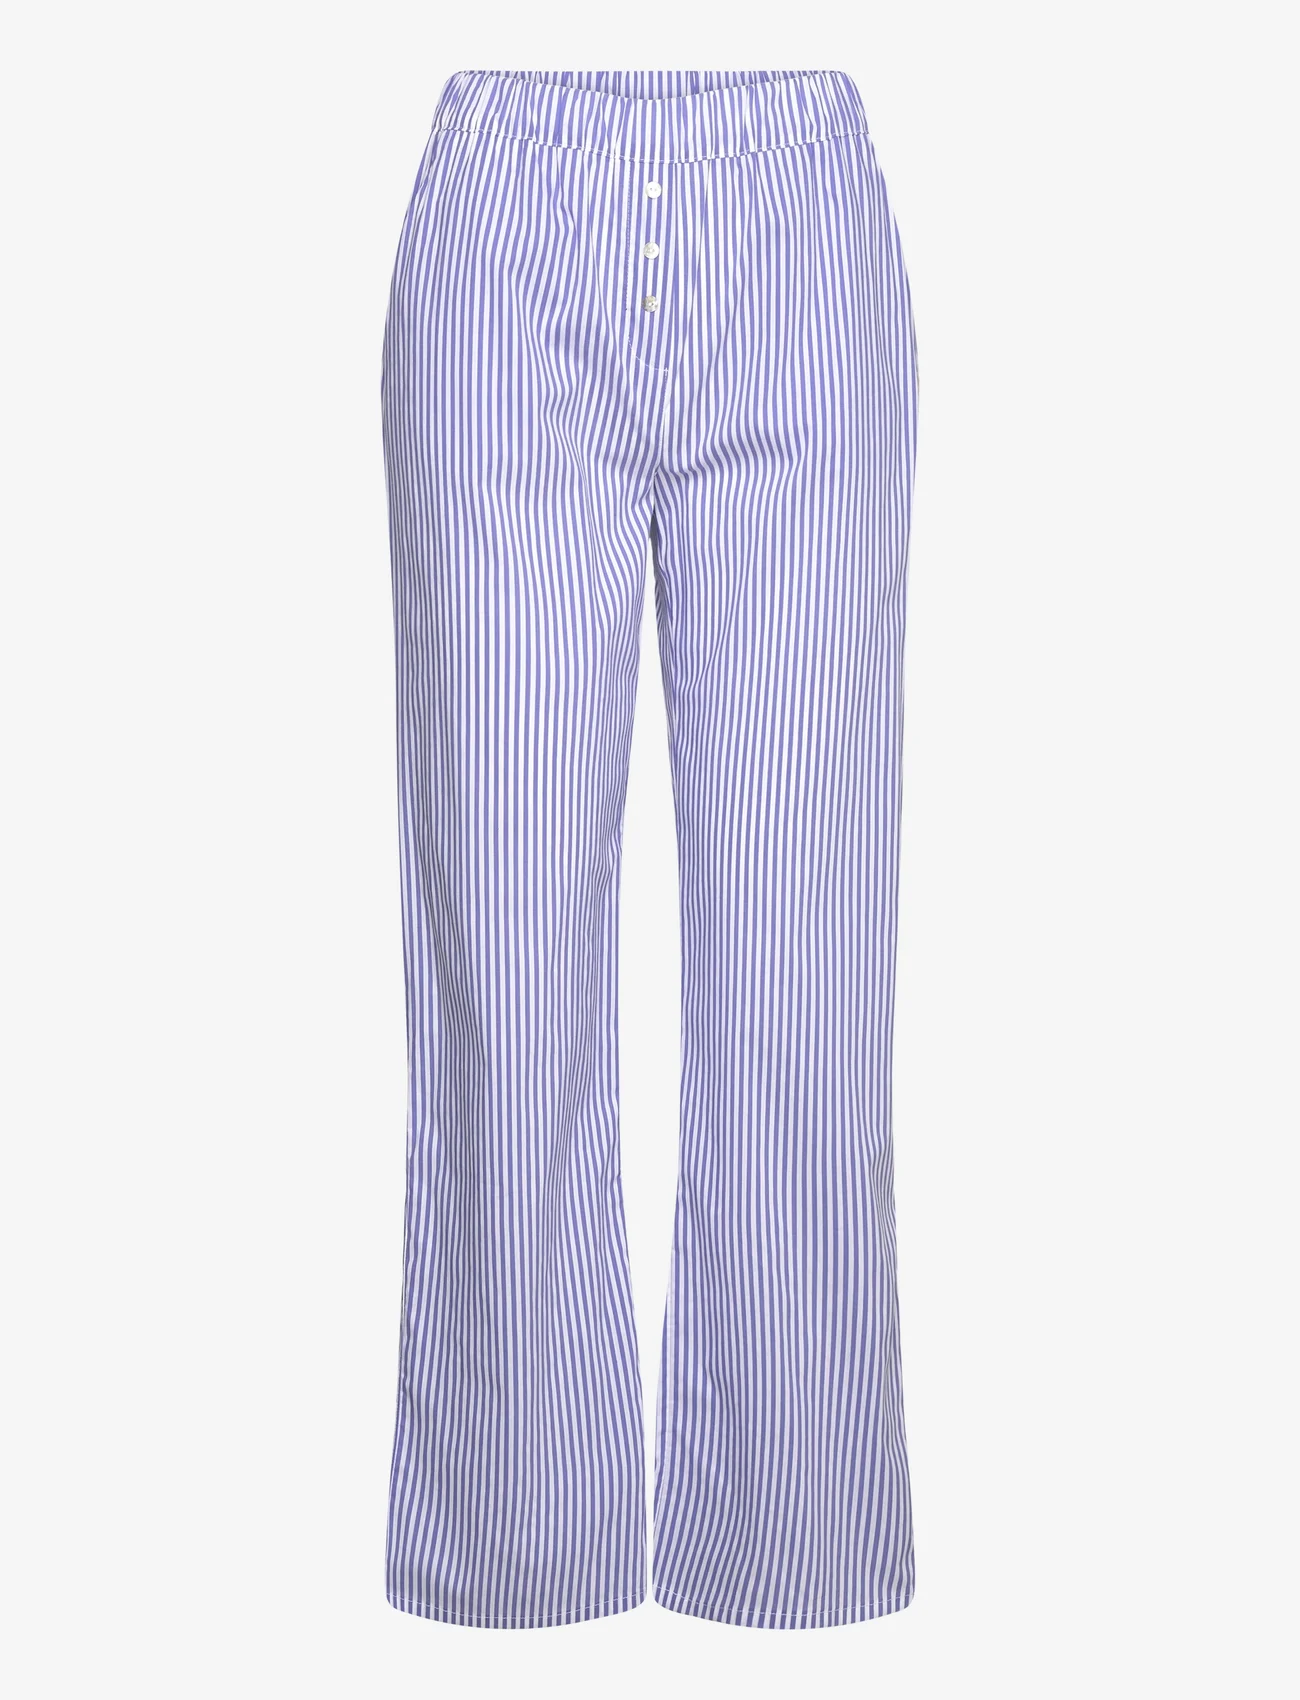 Etam - Cleeo Trouser Pyjama Bottom - madalaimad hinnad - blue - 0